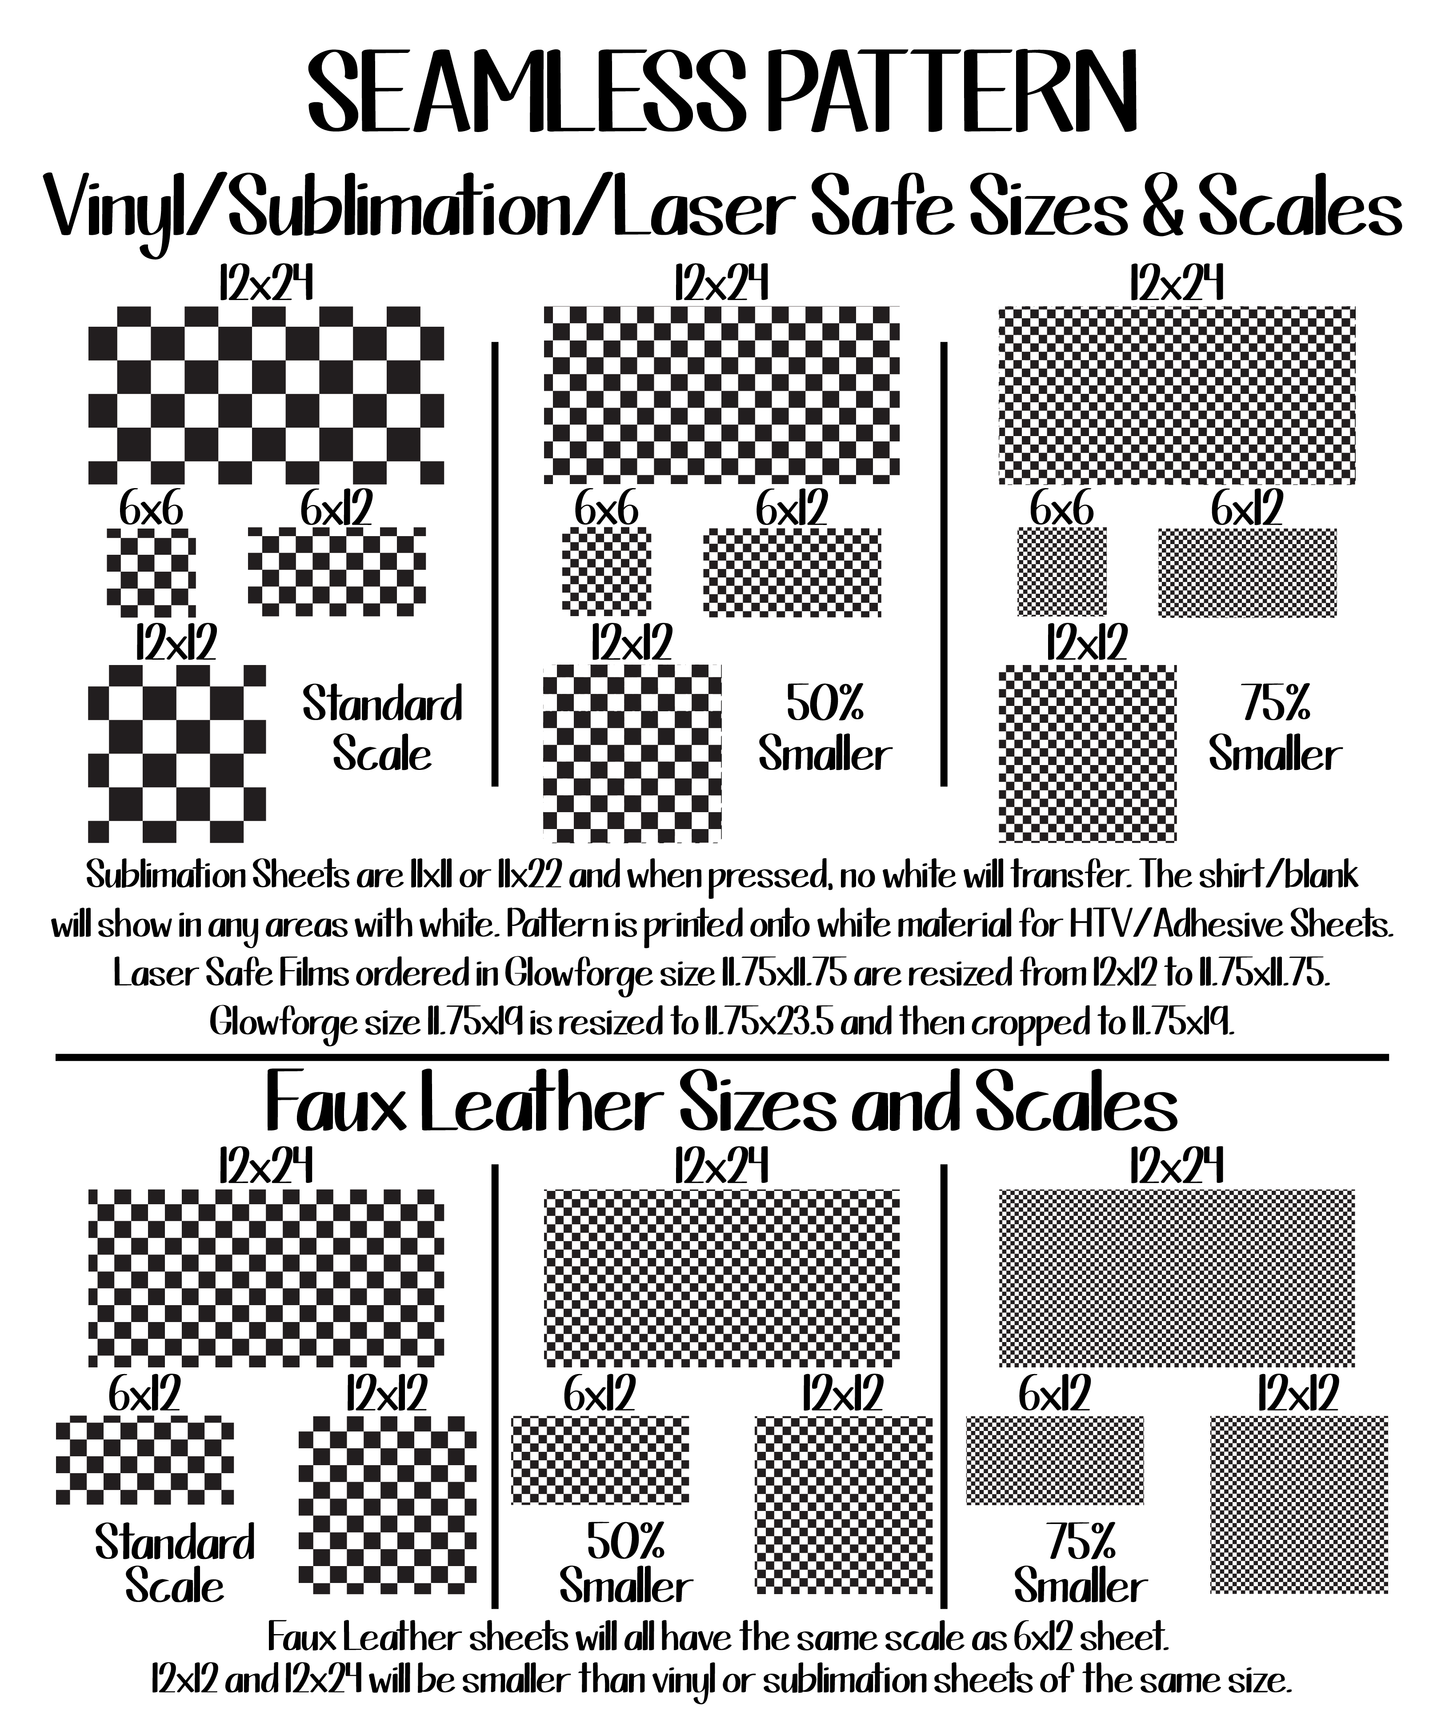 Patriotic Cheetah ★ Pattern Vinyl | Faux Leather | Sublimation (TAT 3 BUS DAYS)